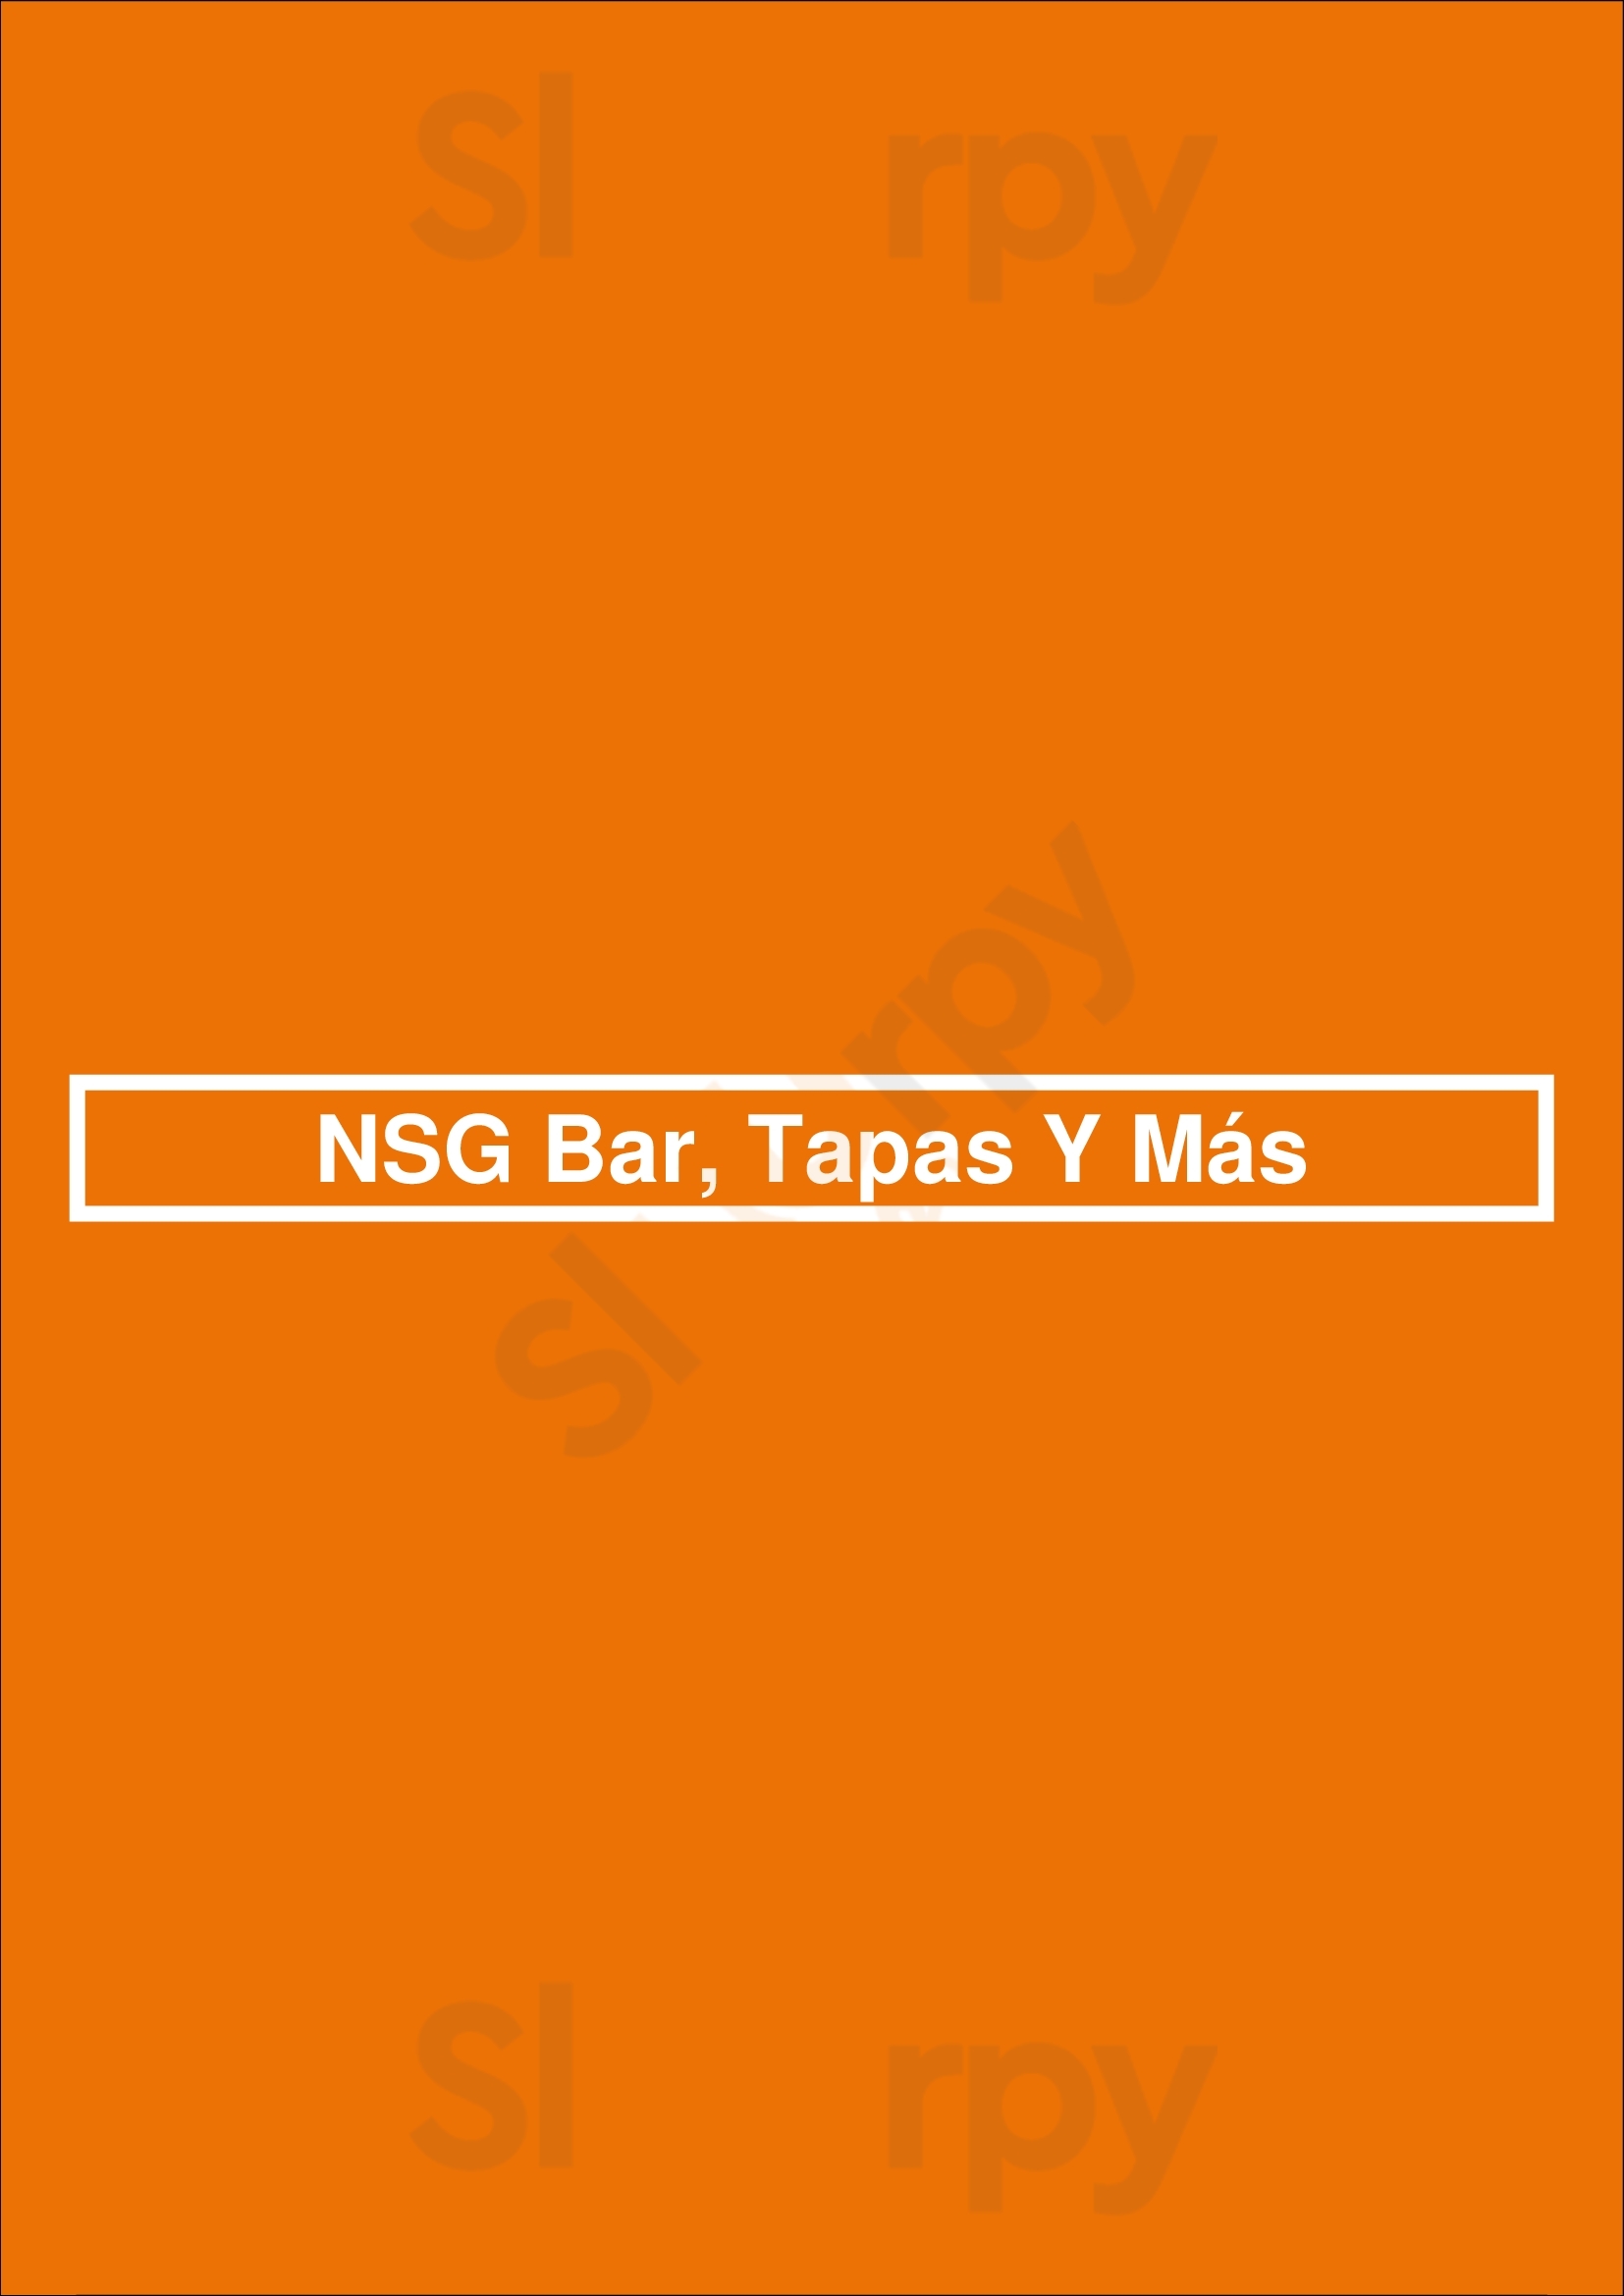 Nsg Bar, Tapas Y Más Oviedo Menu - 1